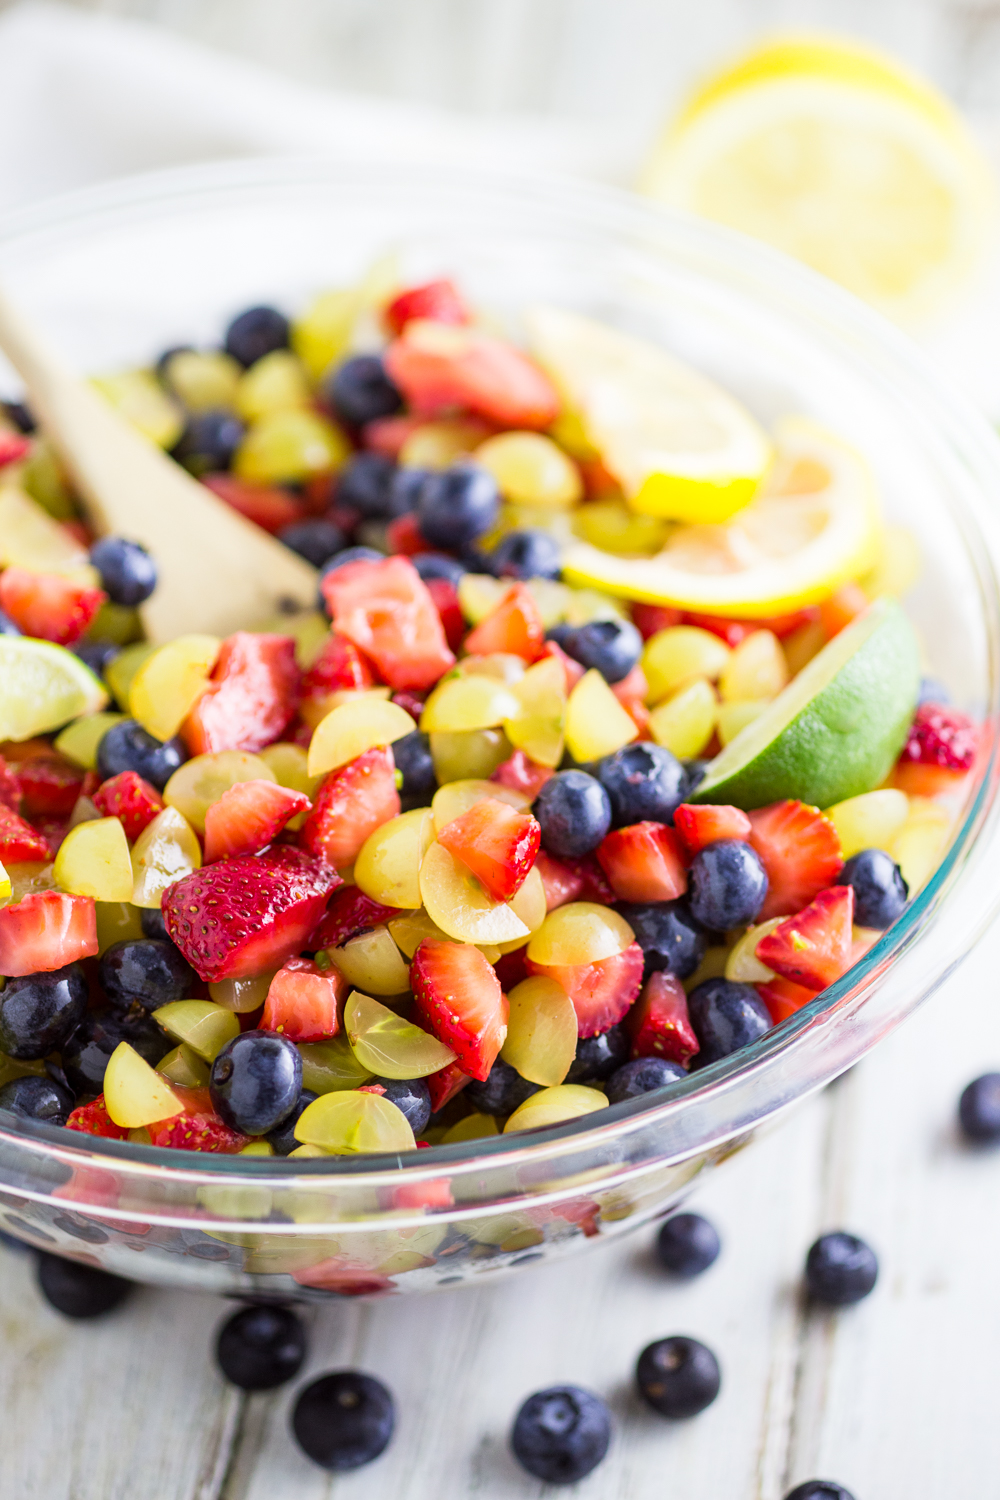 Easy Homemade Fruit Salad Recipe